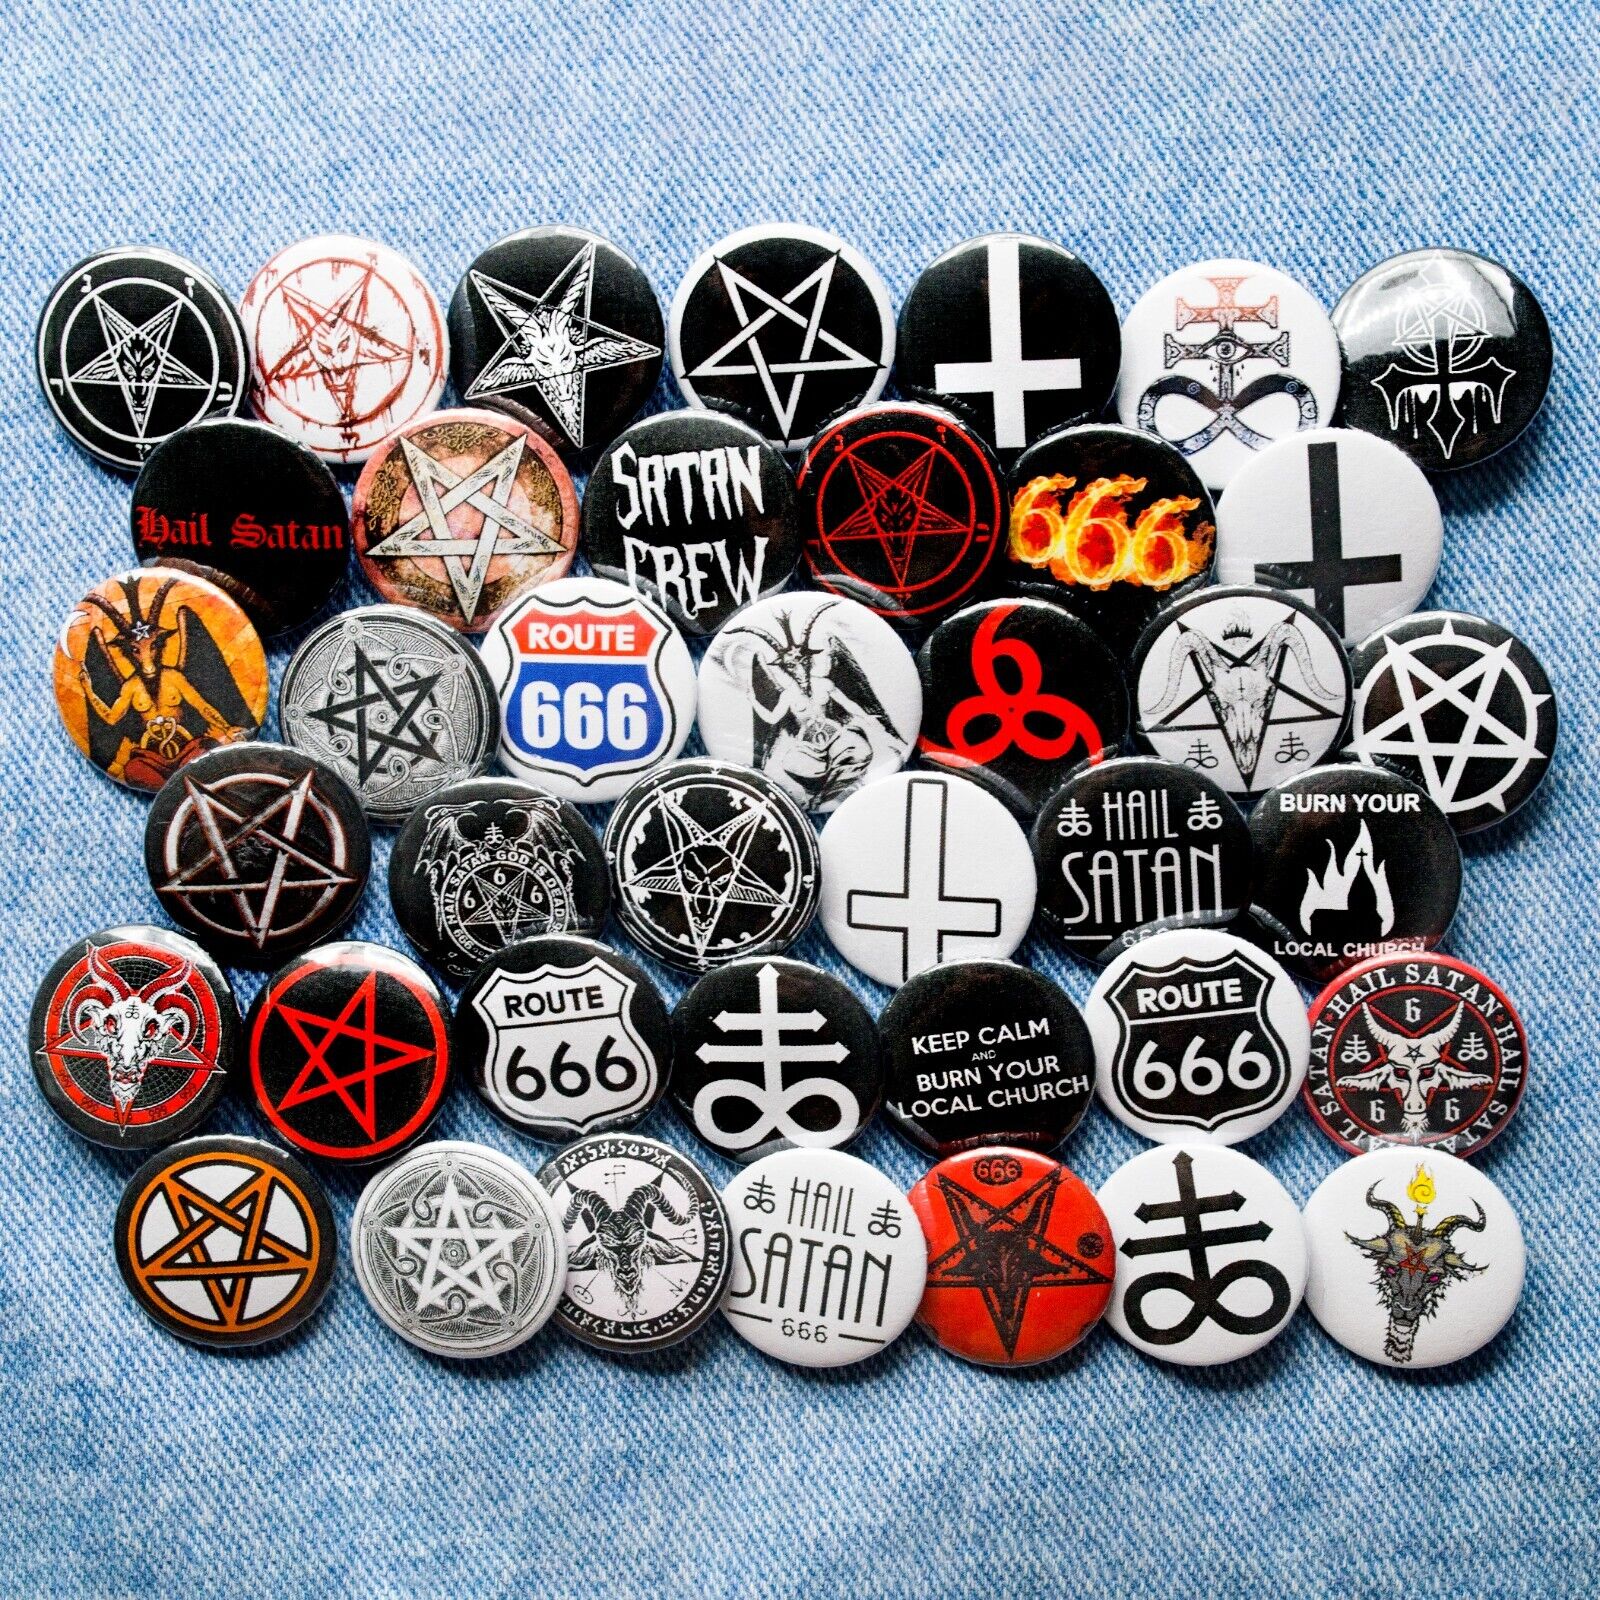 Button badge pins Pentagram Baphomet Satan 666 occult symbol black metal 40 item